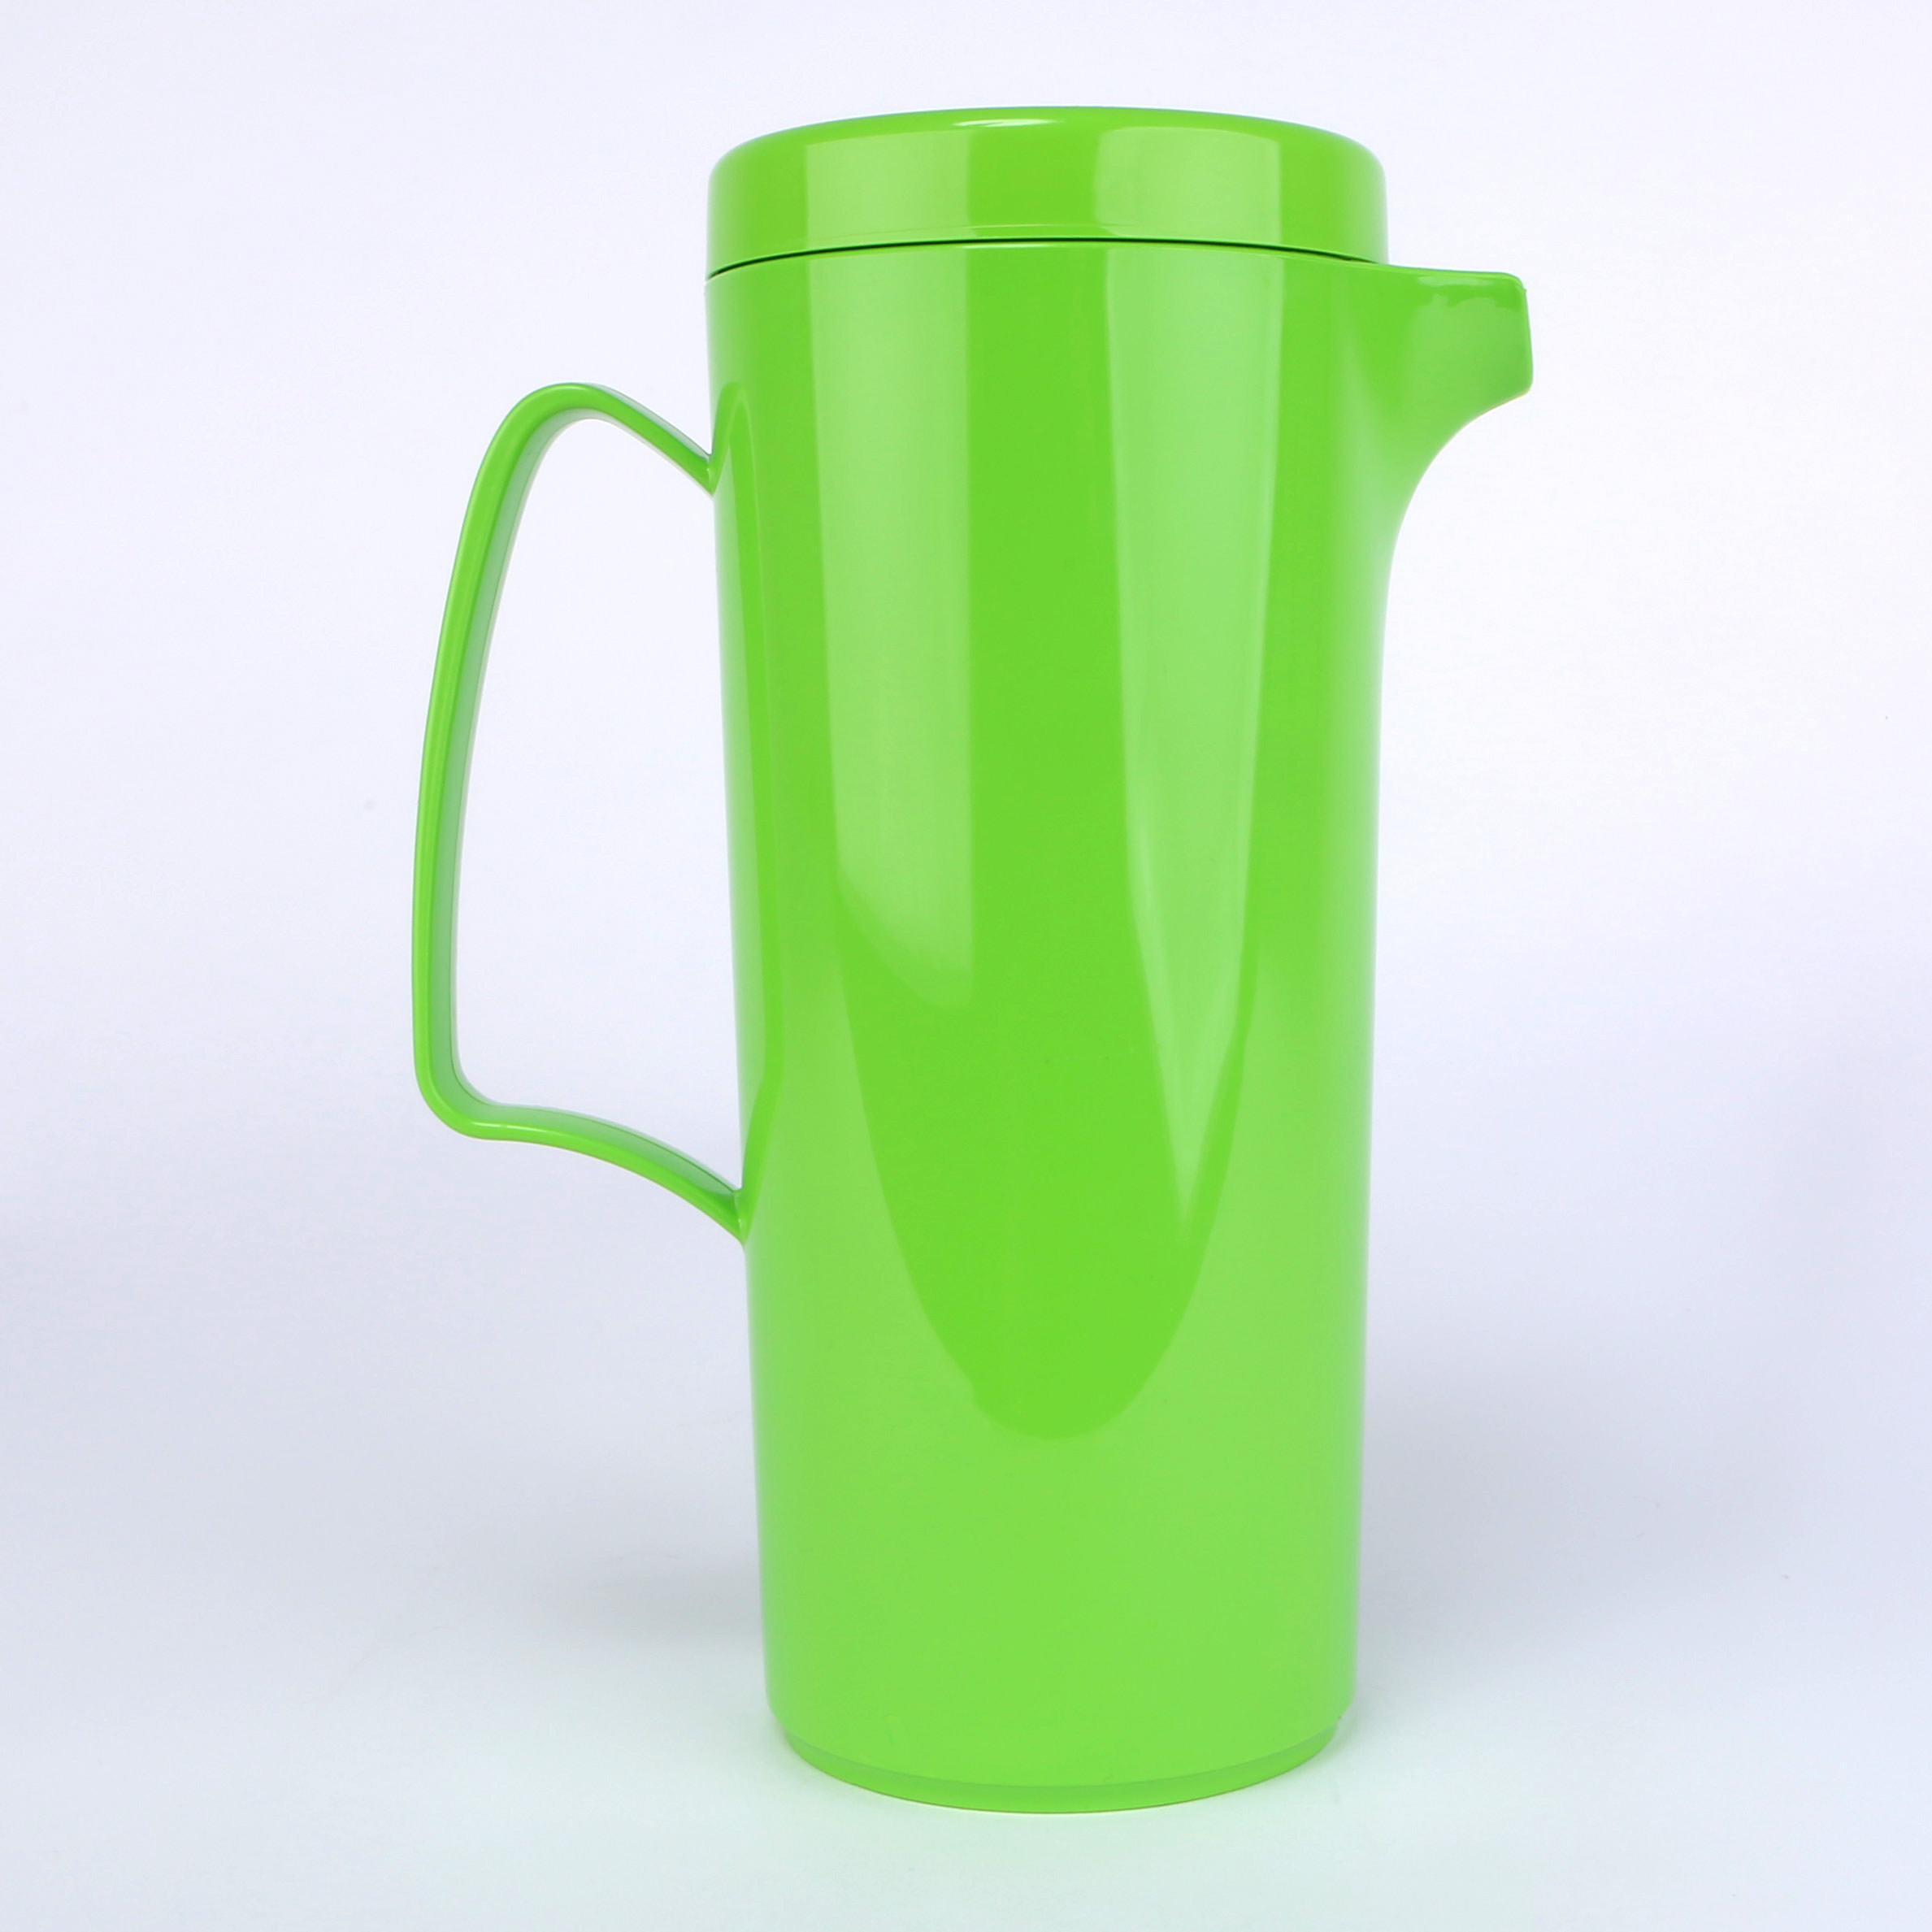 vaLon Zephyr Kanne 1 L mit Deckel aus schadstofffreiem Kunststoff in der Farbe grasgrün.